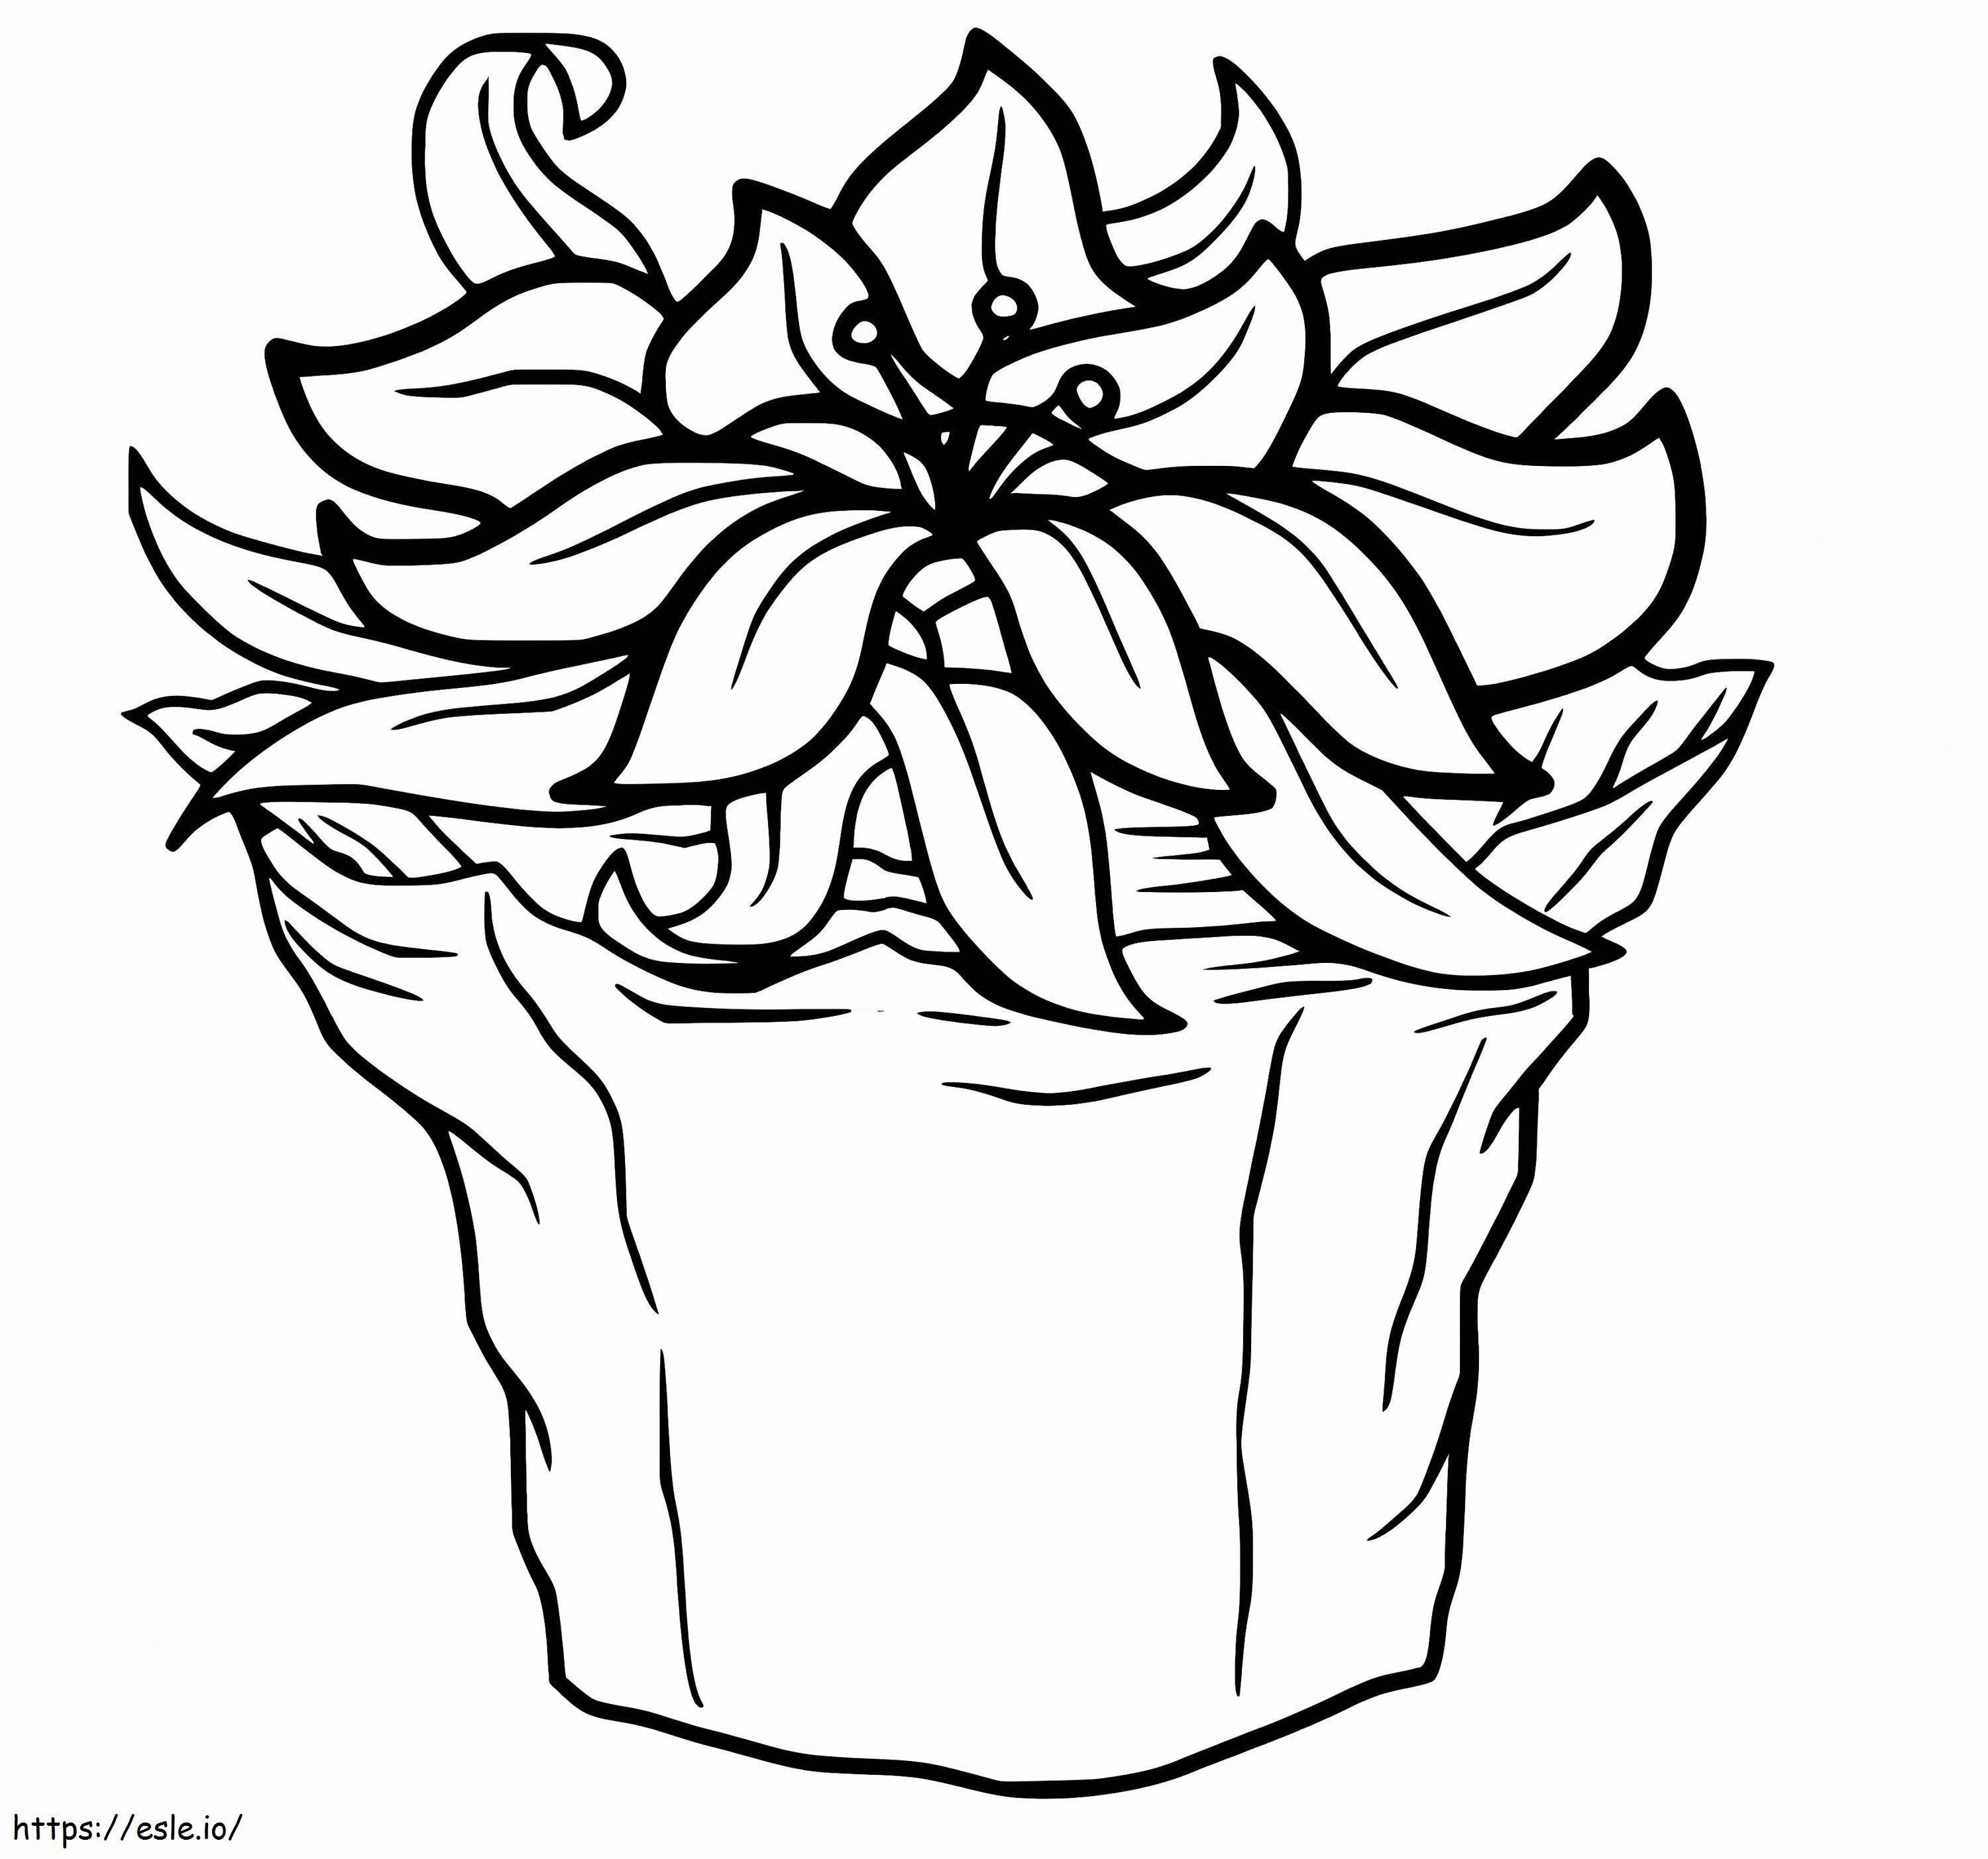 Coloriage Poinsettia pour Noël à imprimer dessin